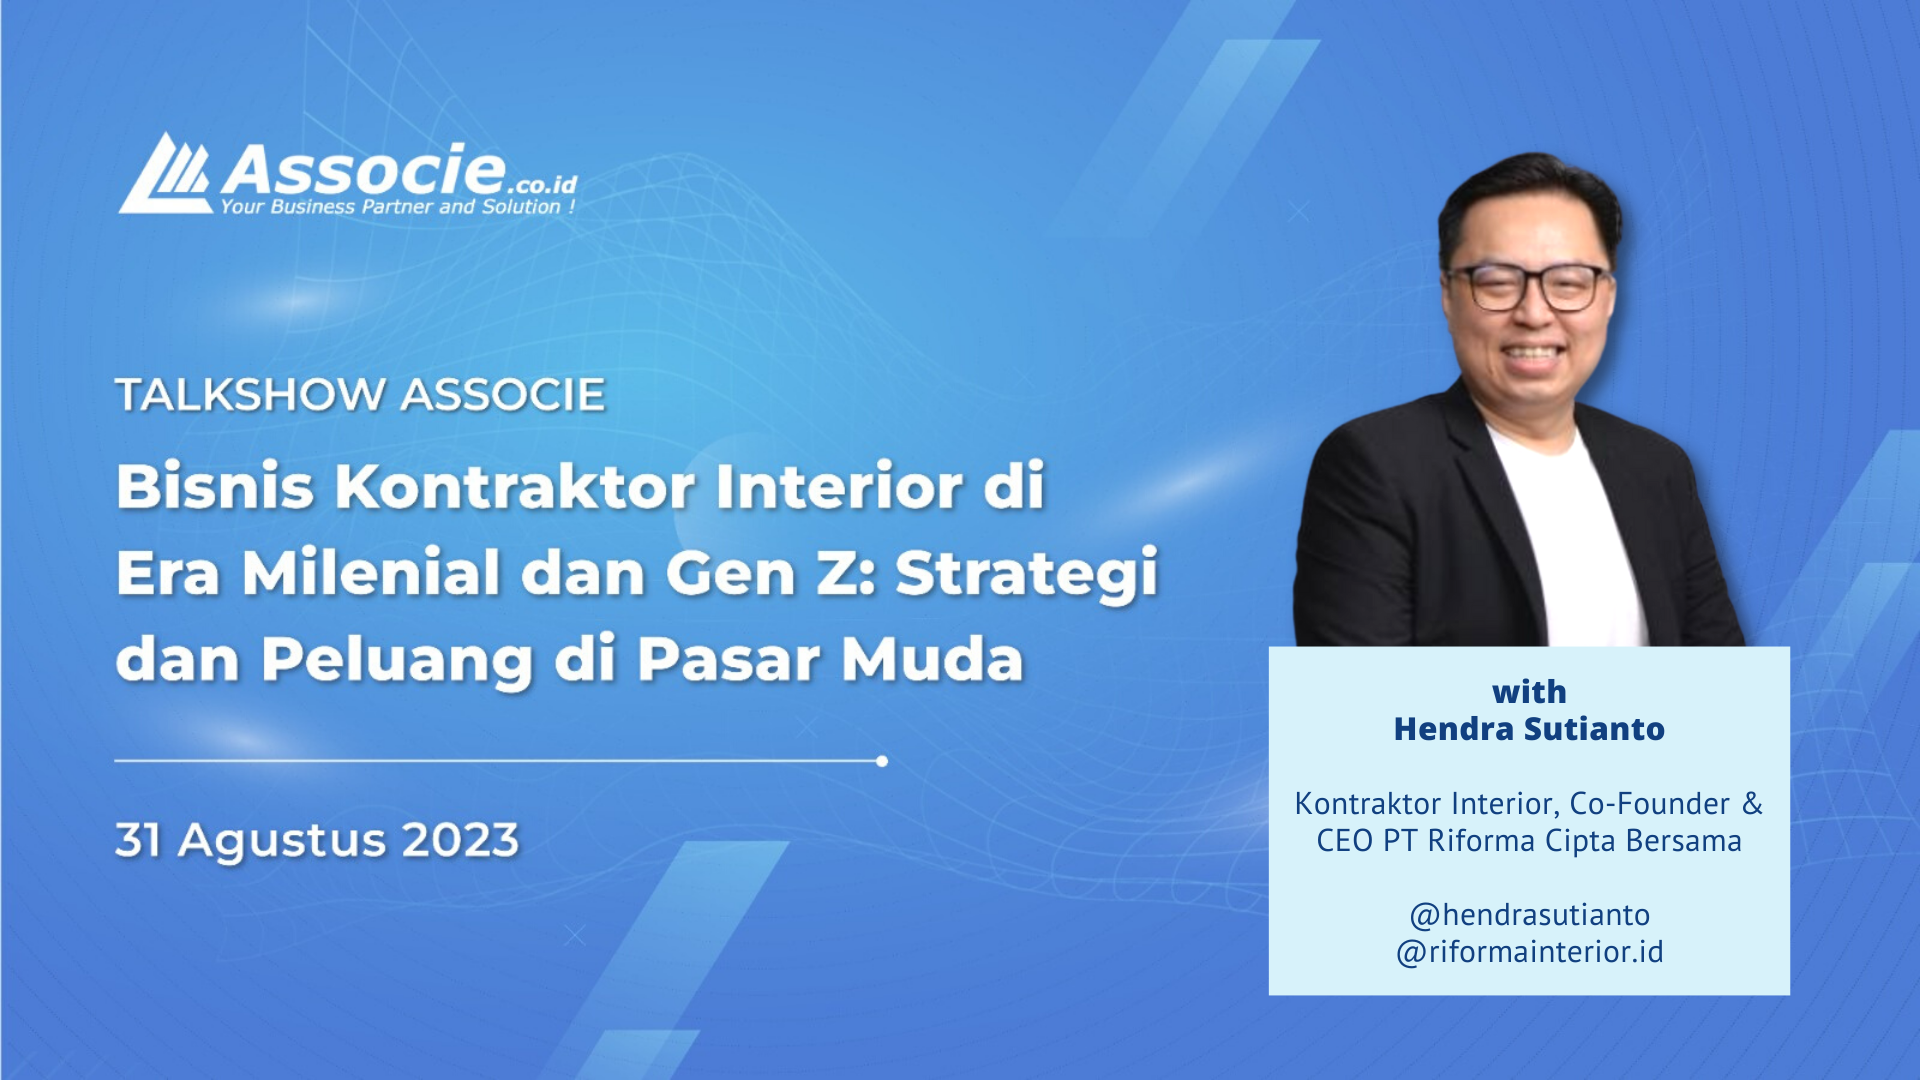 Bisnis Kontraktor Interior di Era Milenial dan Gen Z: Tips dan Tantangan dari Pak Hendra Sutianto